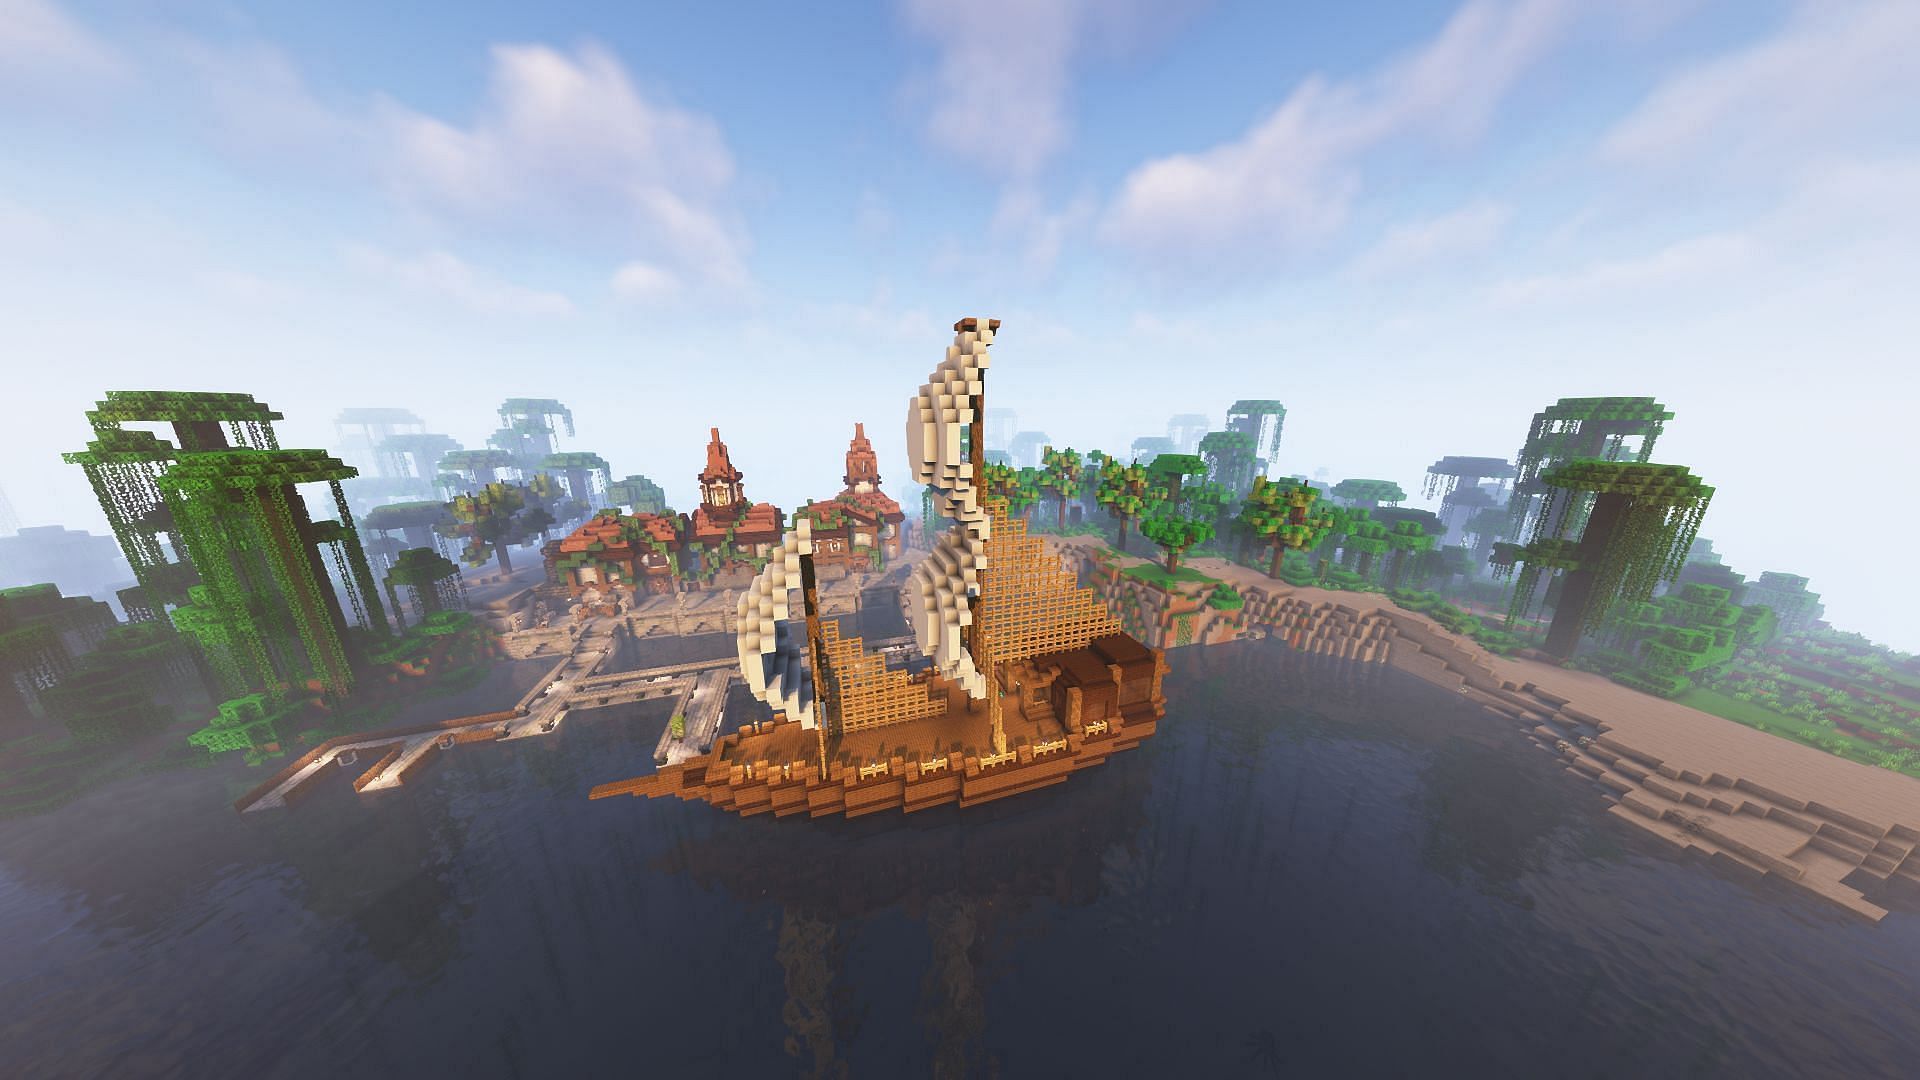 Boat build (Image via u/Glittering_Ad5603 on Reddit)